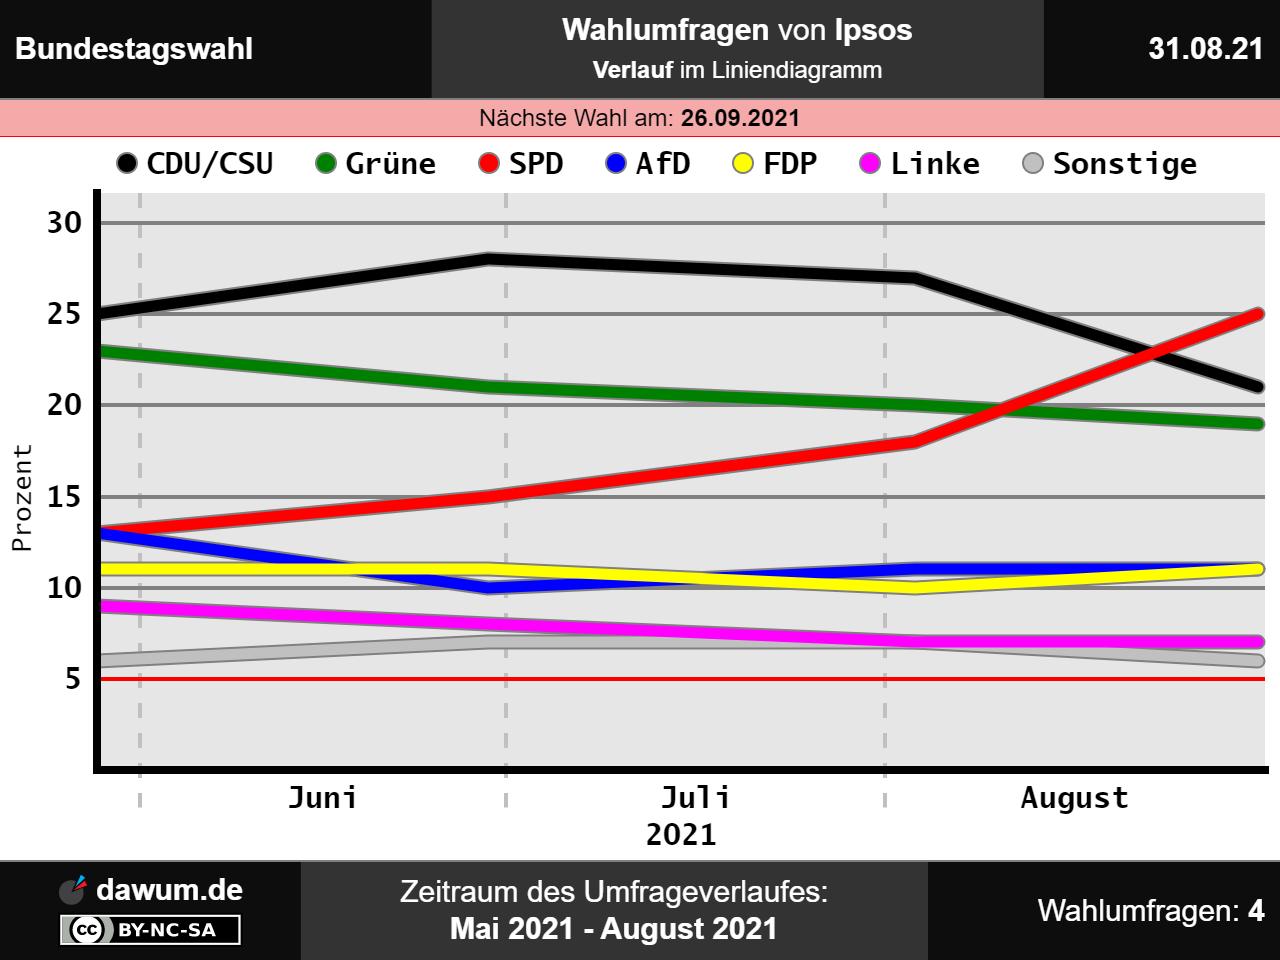 dawum.de-2021-08-31-Bundestag-Ipsos-Umfrageverlauf.png